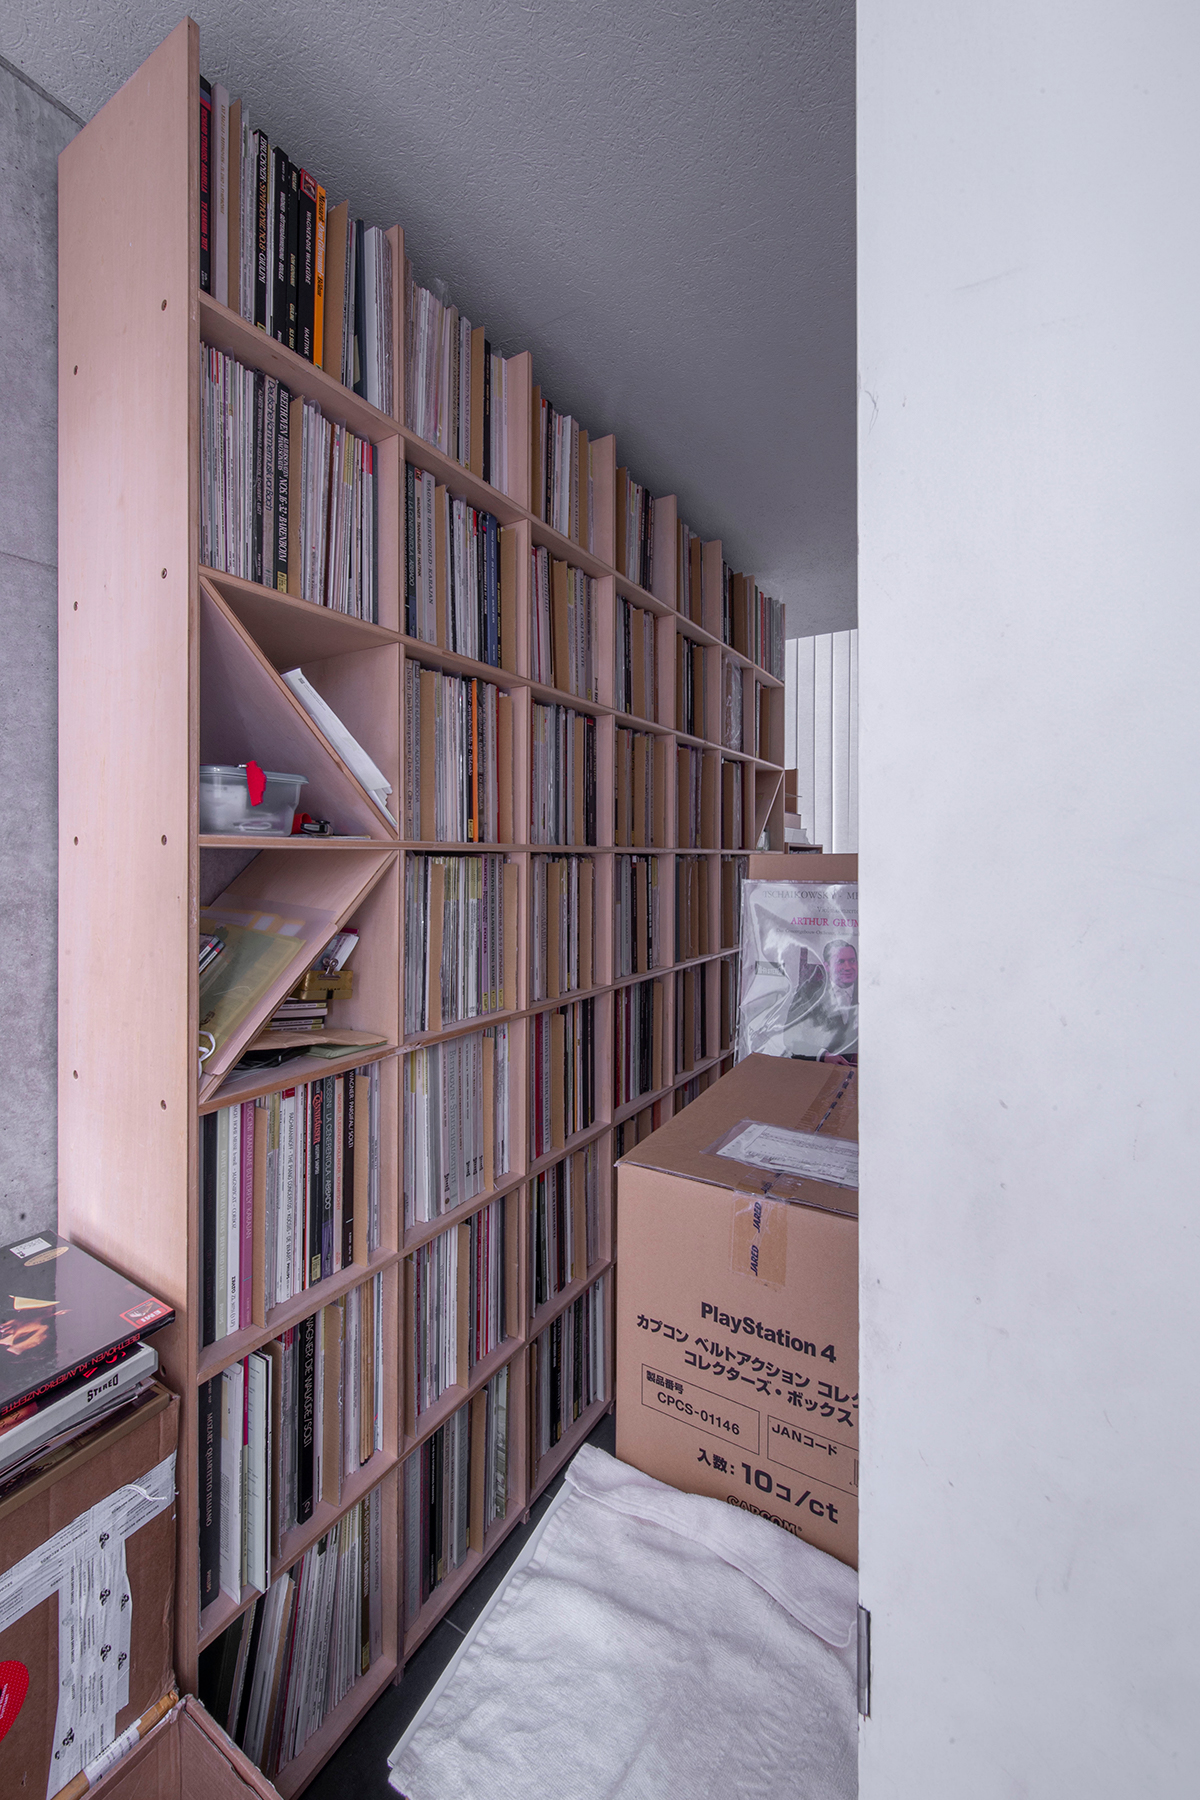 壁一面のレコード棚